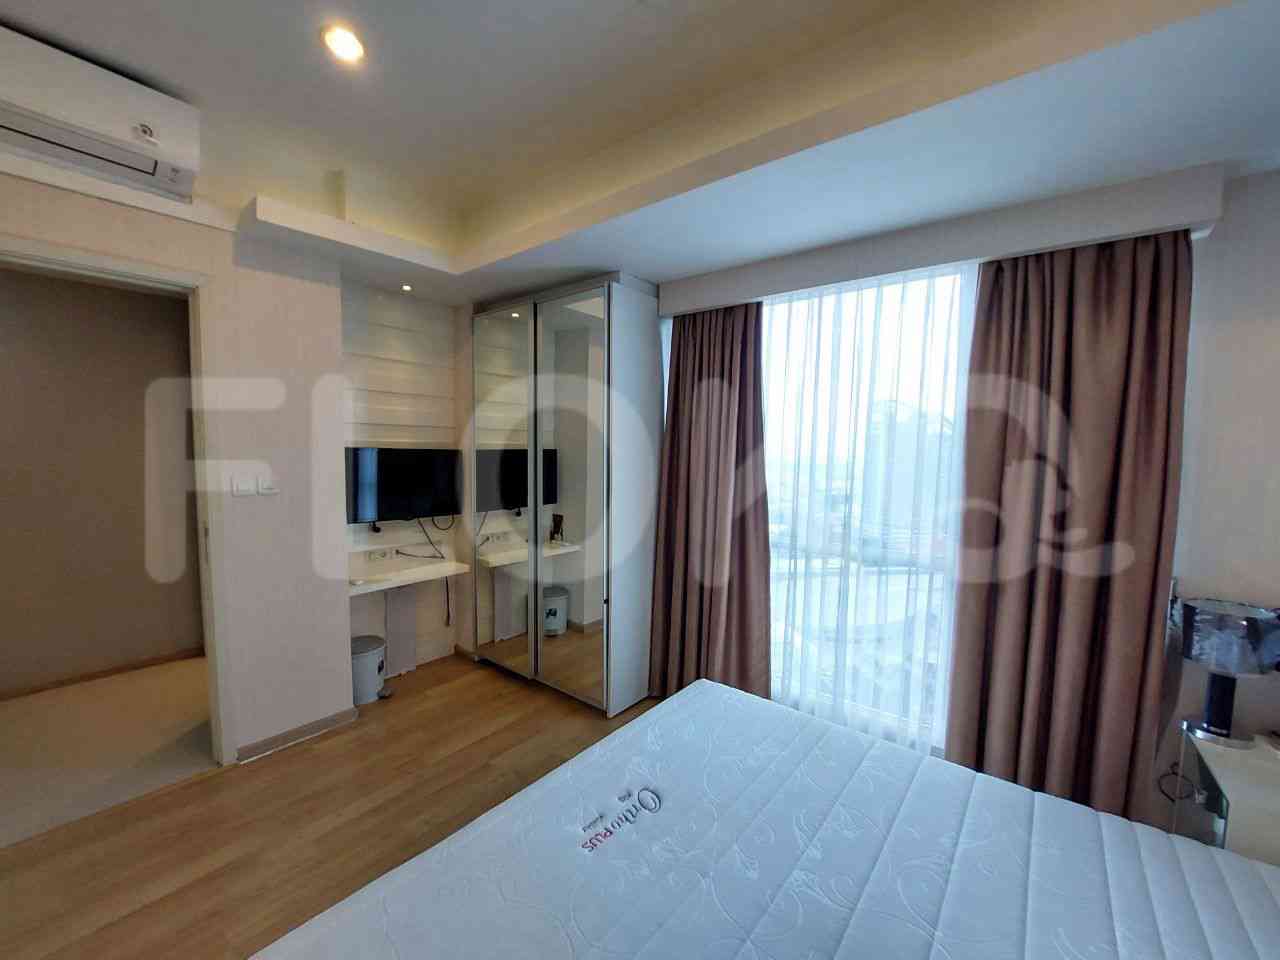 4 Bedroom on 25th Floor for Rent in Casa Grande - fte760 5